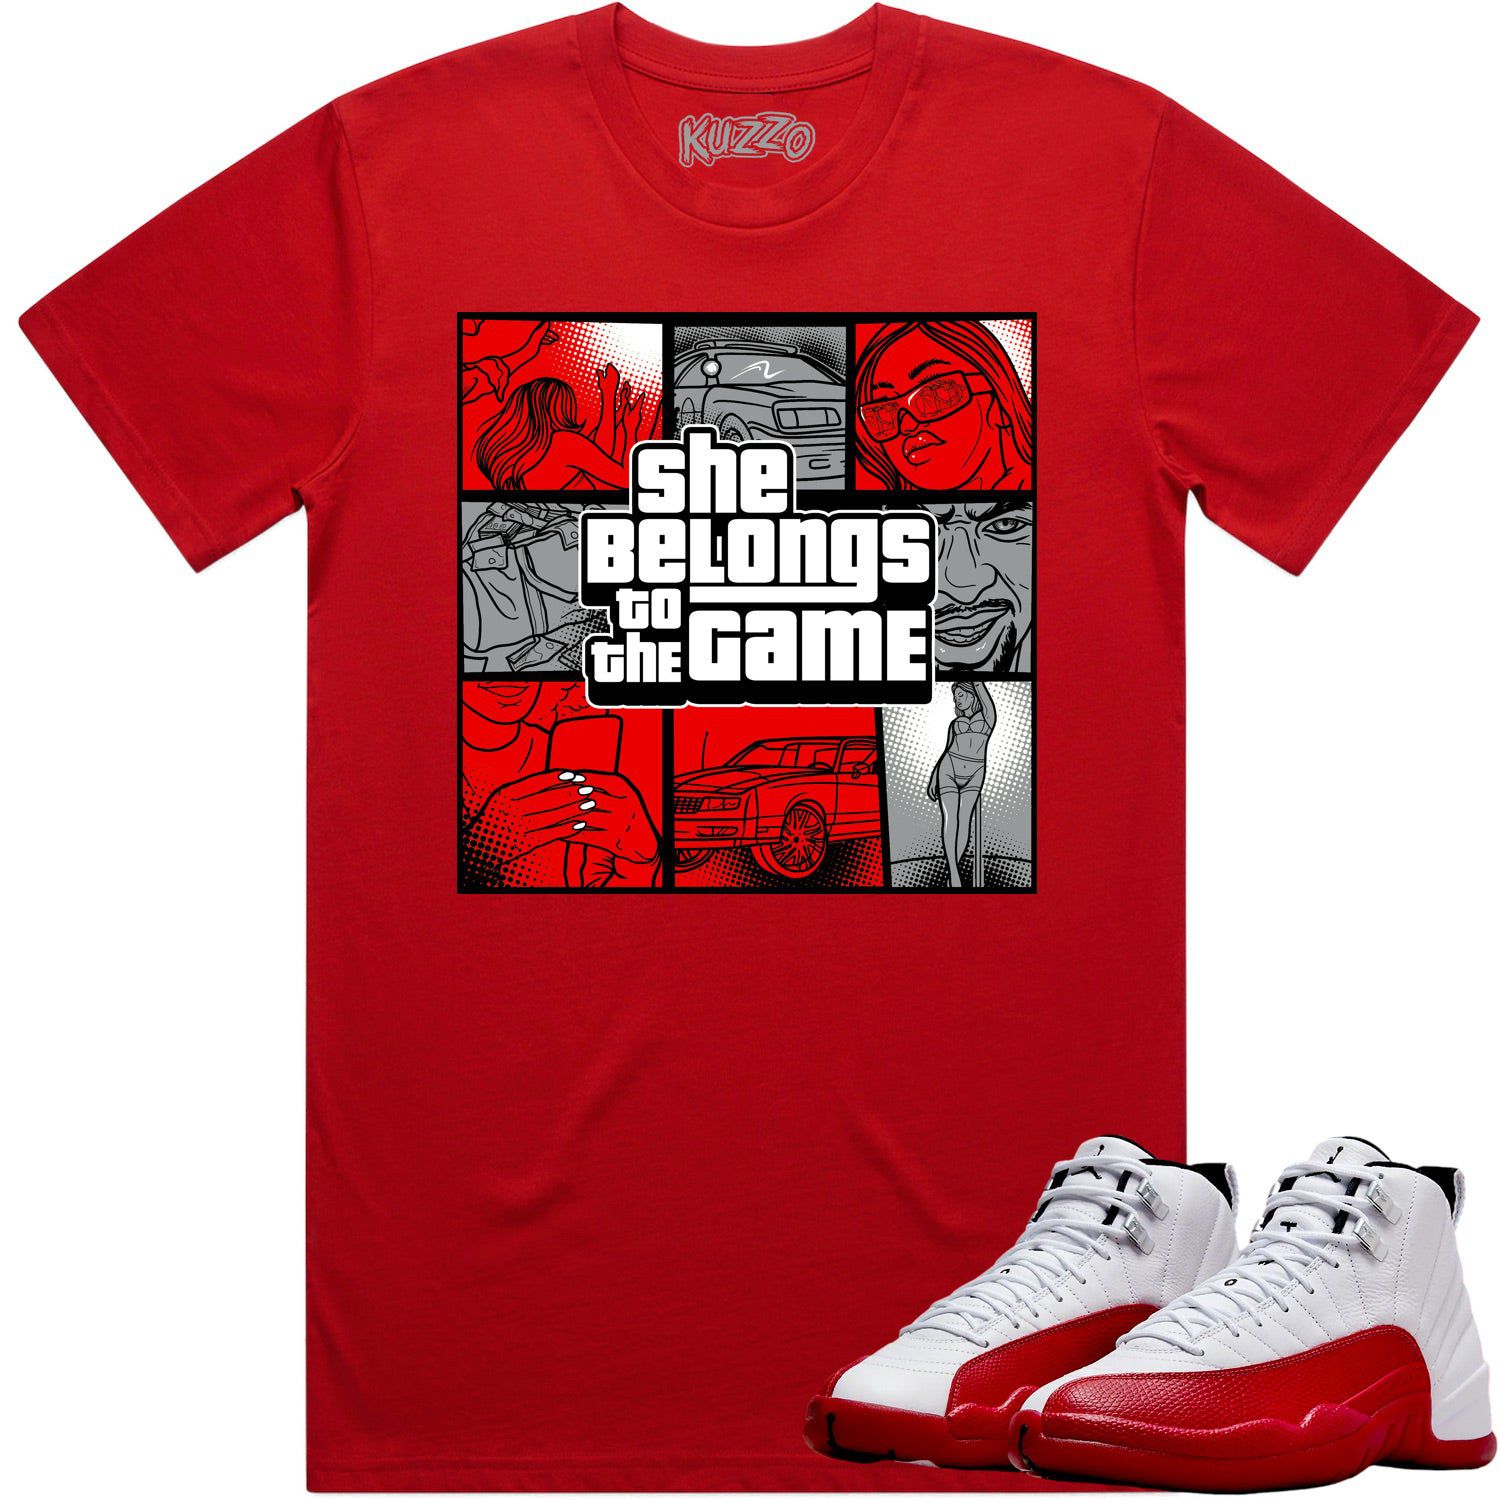 Cherry 12s Shirt - Jordan Retro 12 Cherry Shirts - Red Game